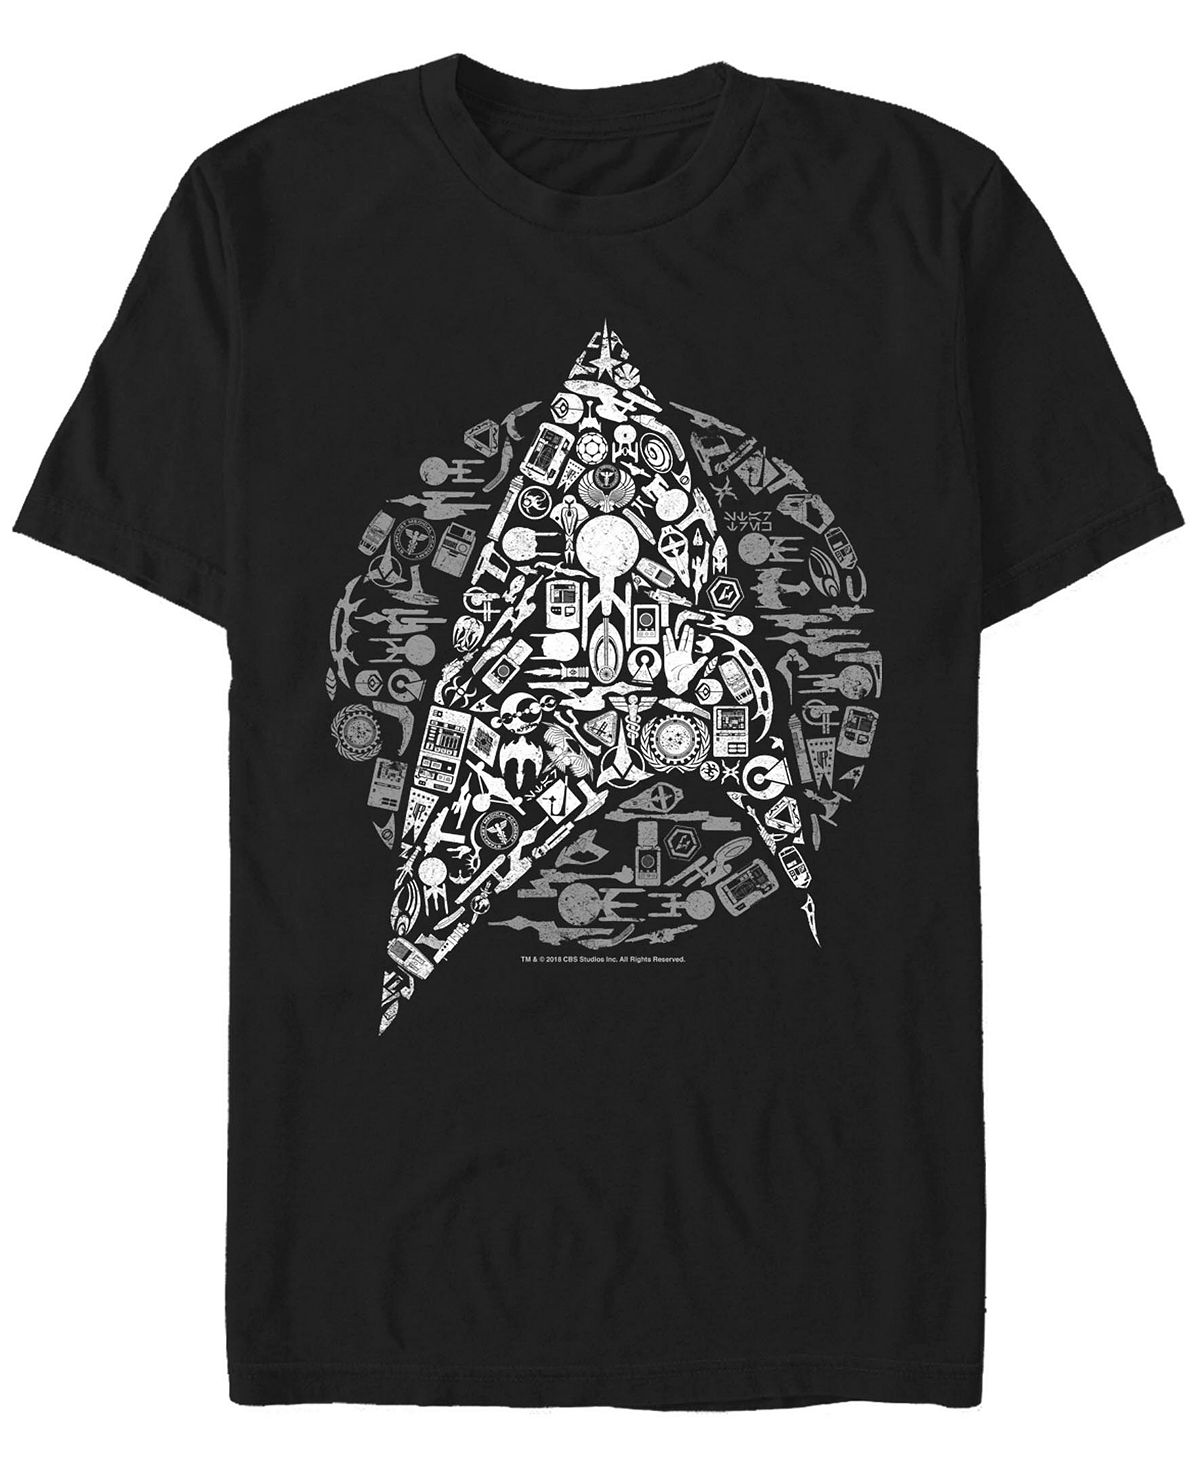 Мужская футболка с короткими рукавами star trek icons logo fill Fifth Sun, черный